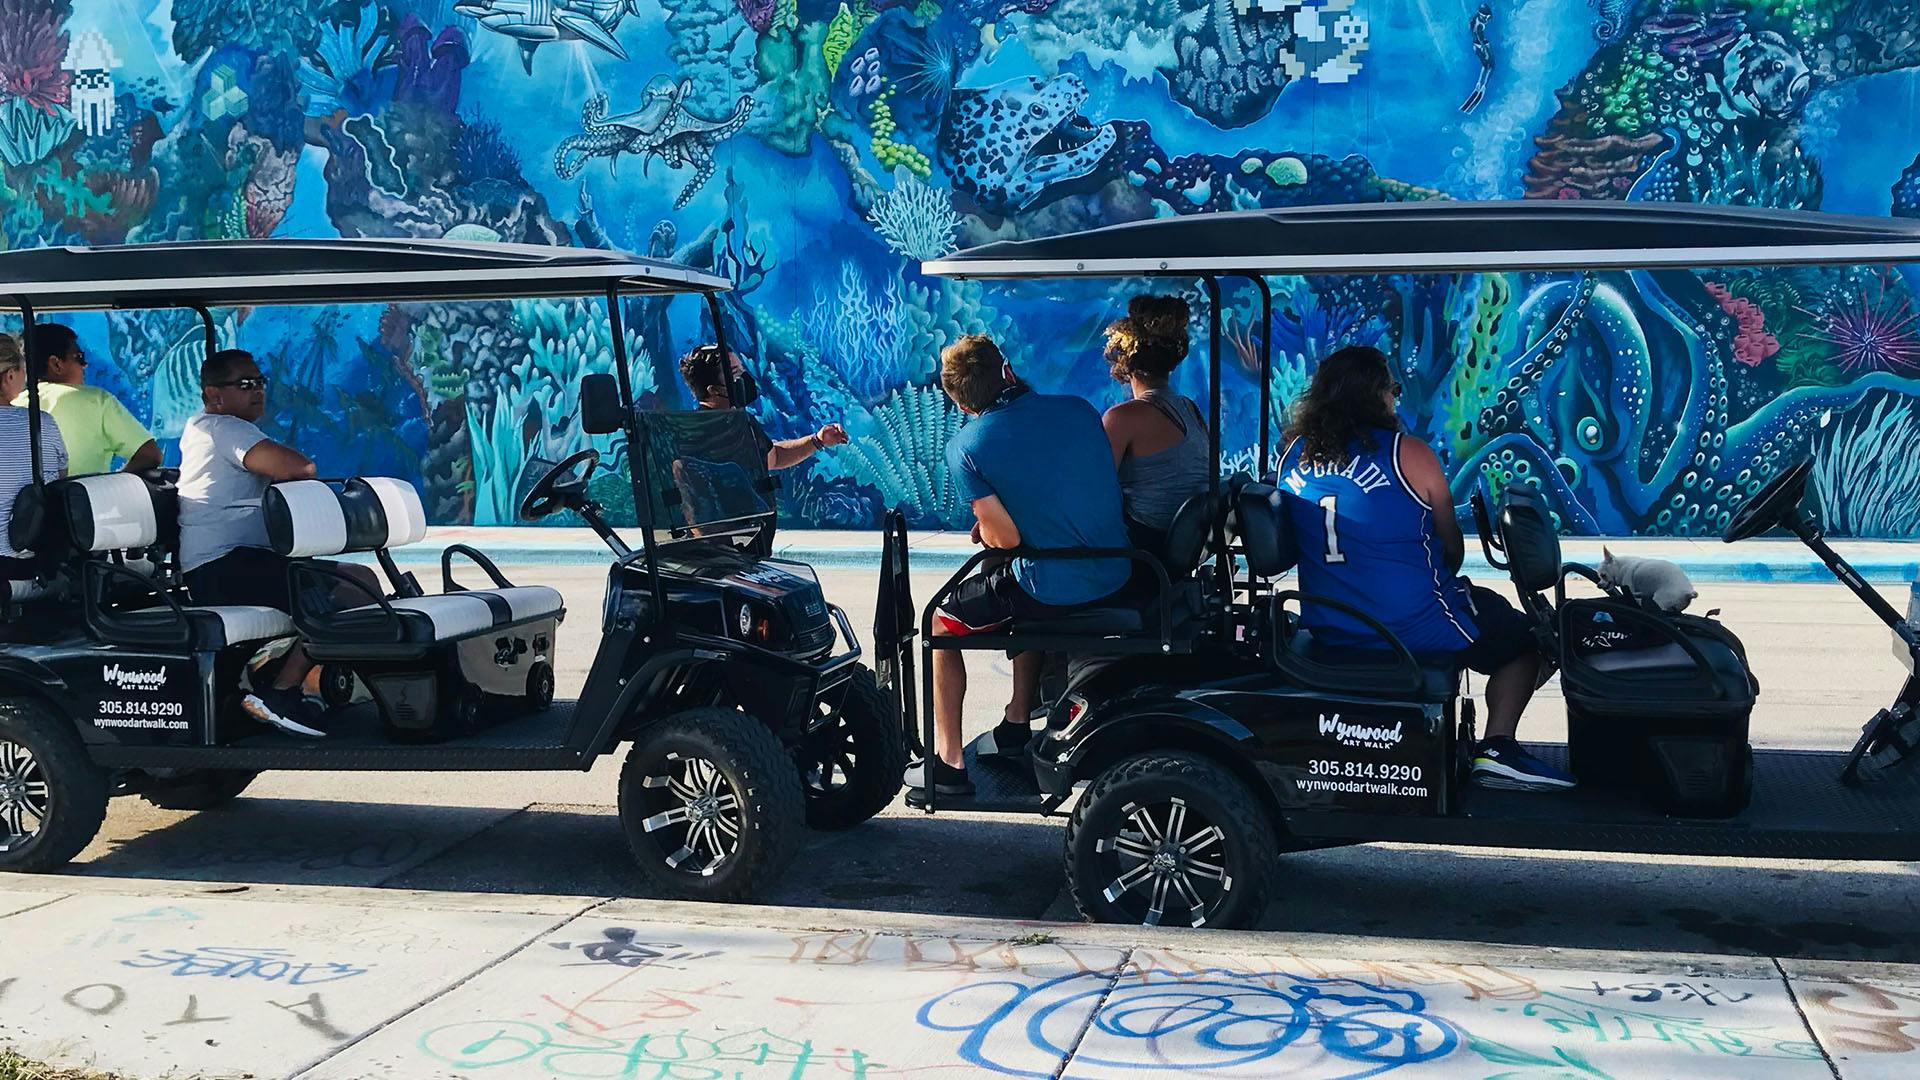 Tour del golf cart dei graffiti di Wynwood